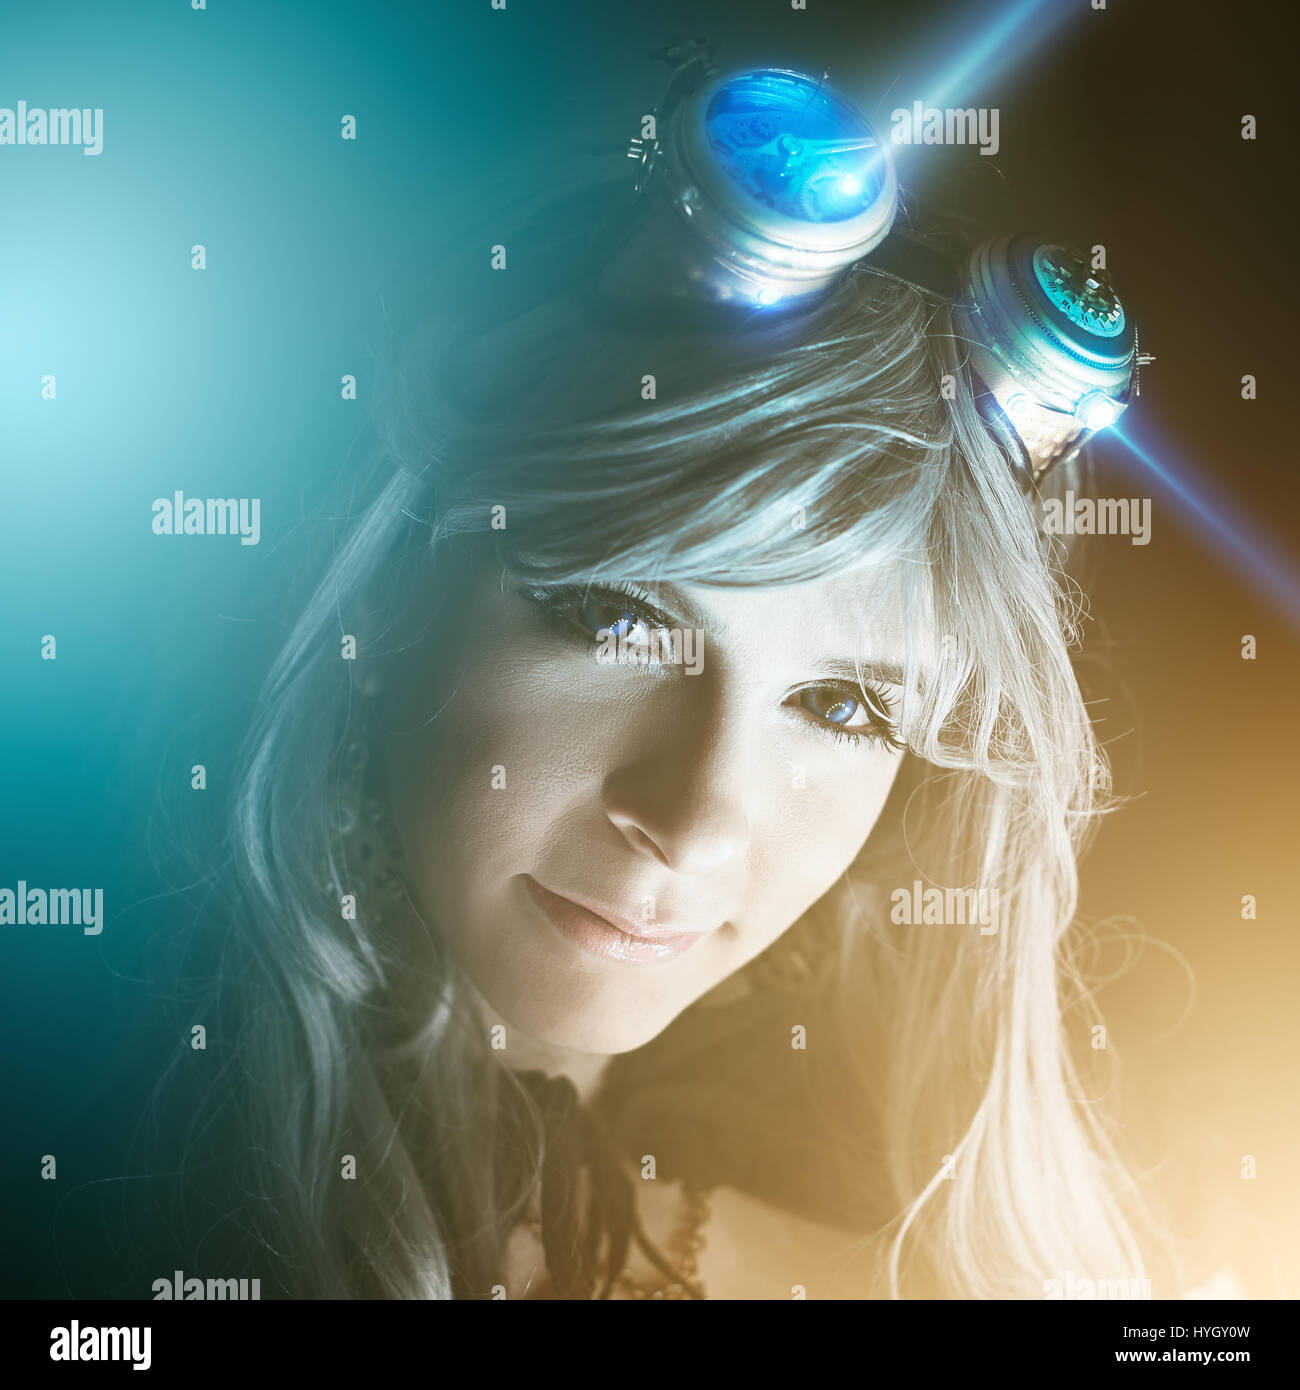 Dunkle Cyberpunk-Porträt einer schönen Frau Stockfoto